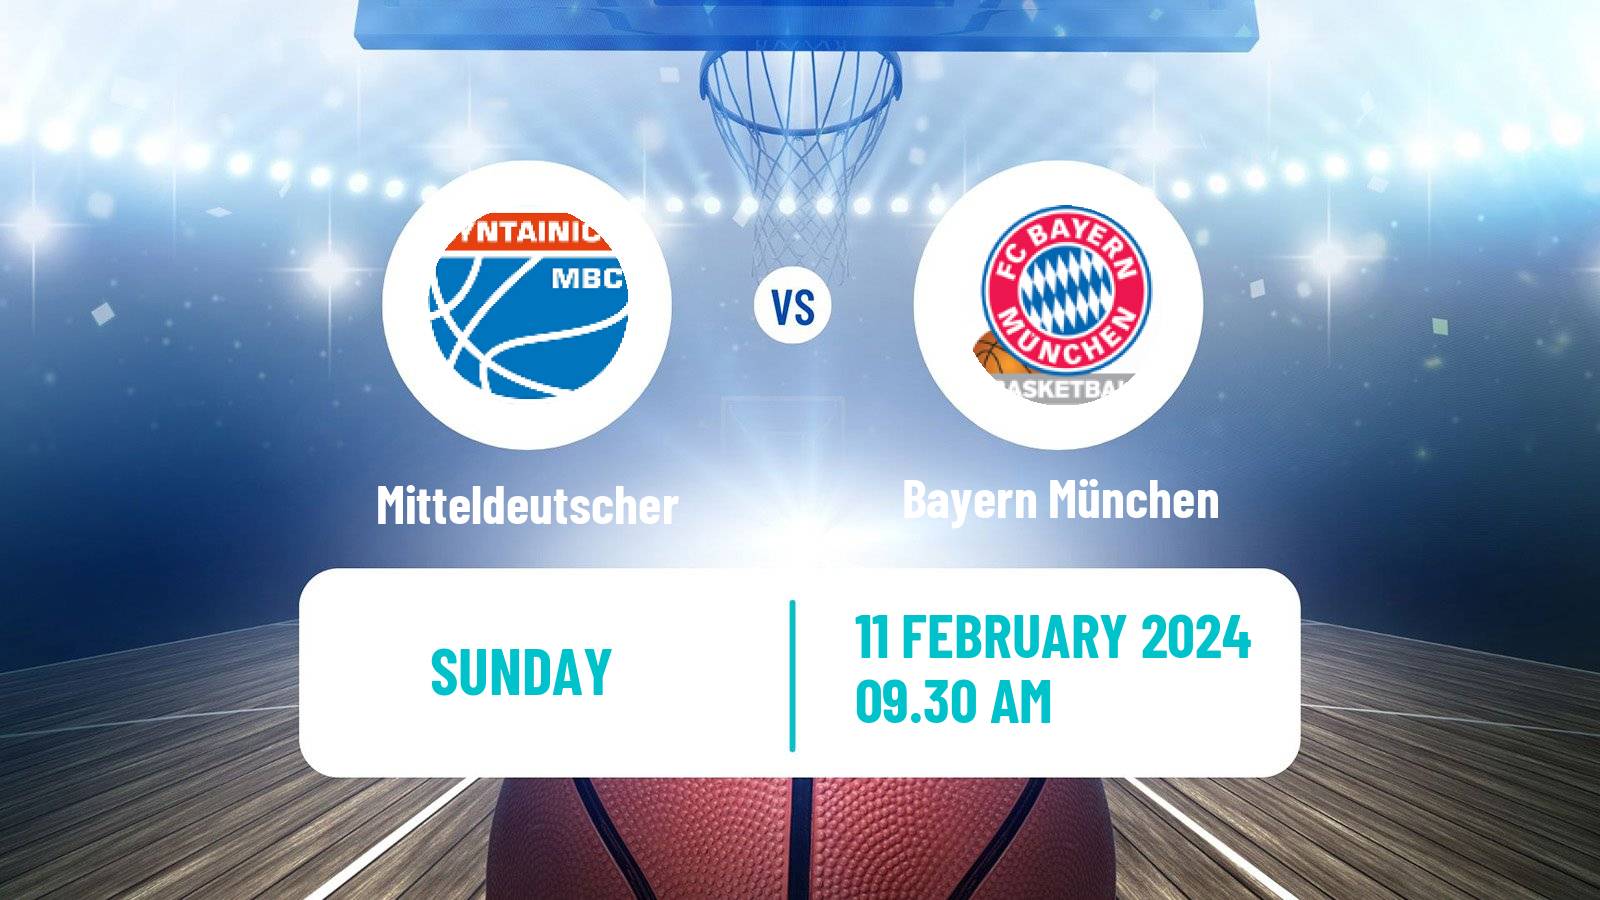 Basketball German BBL Mitteldeutscher - Bayern München